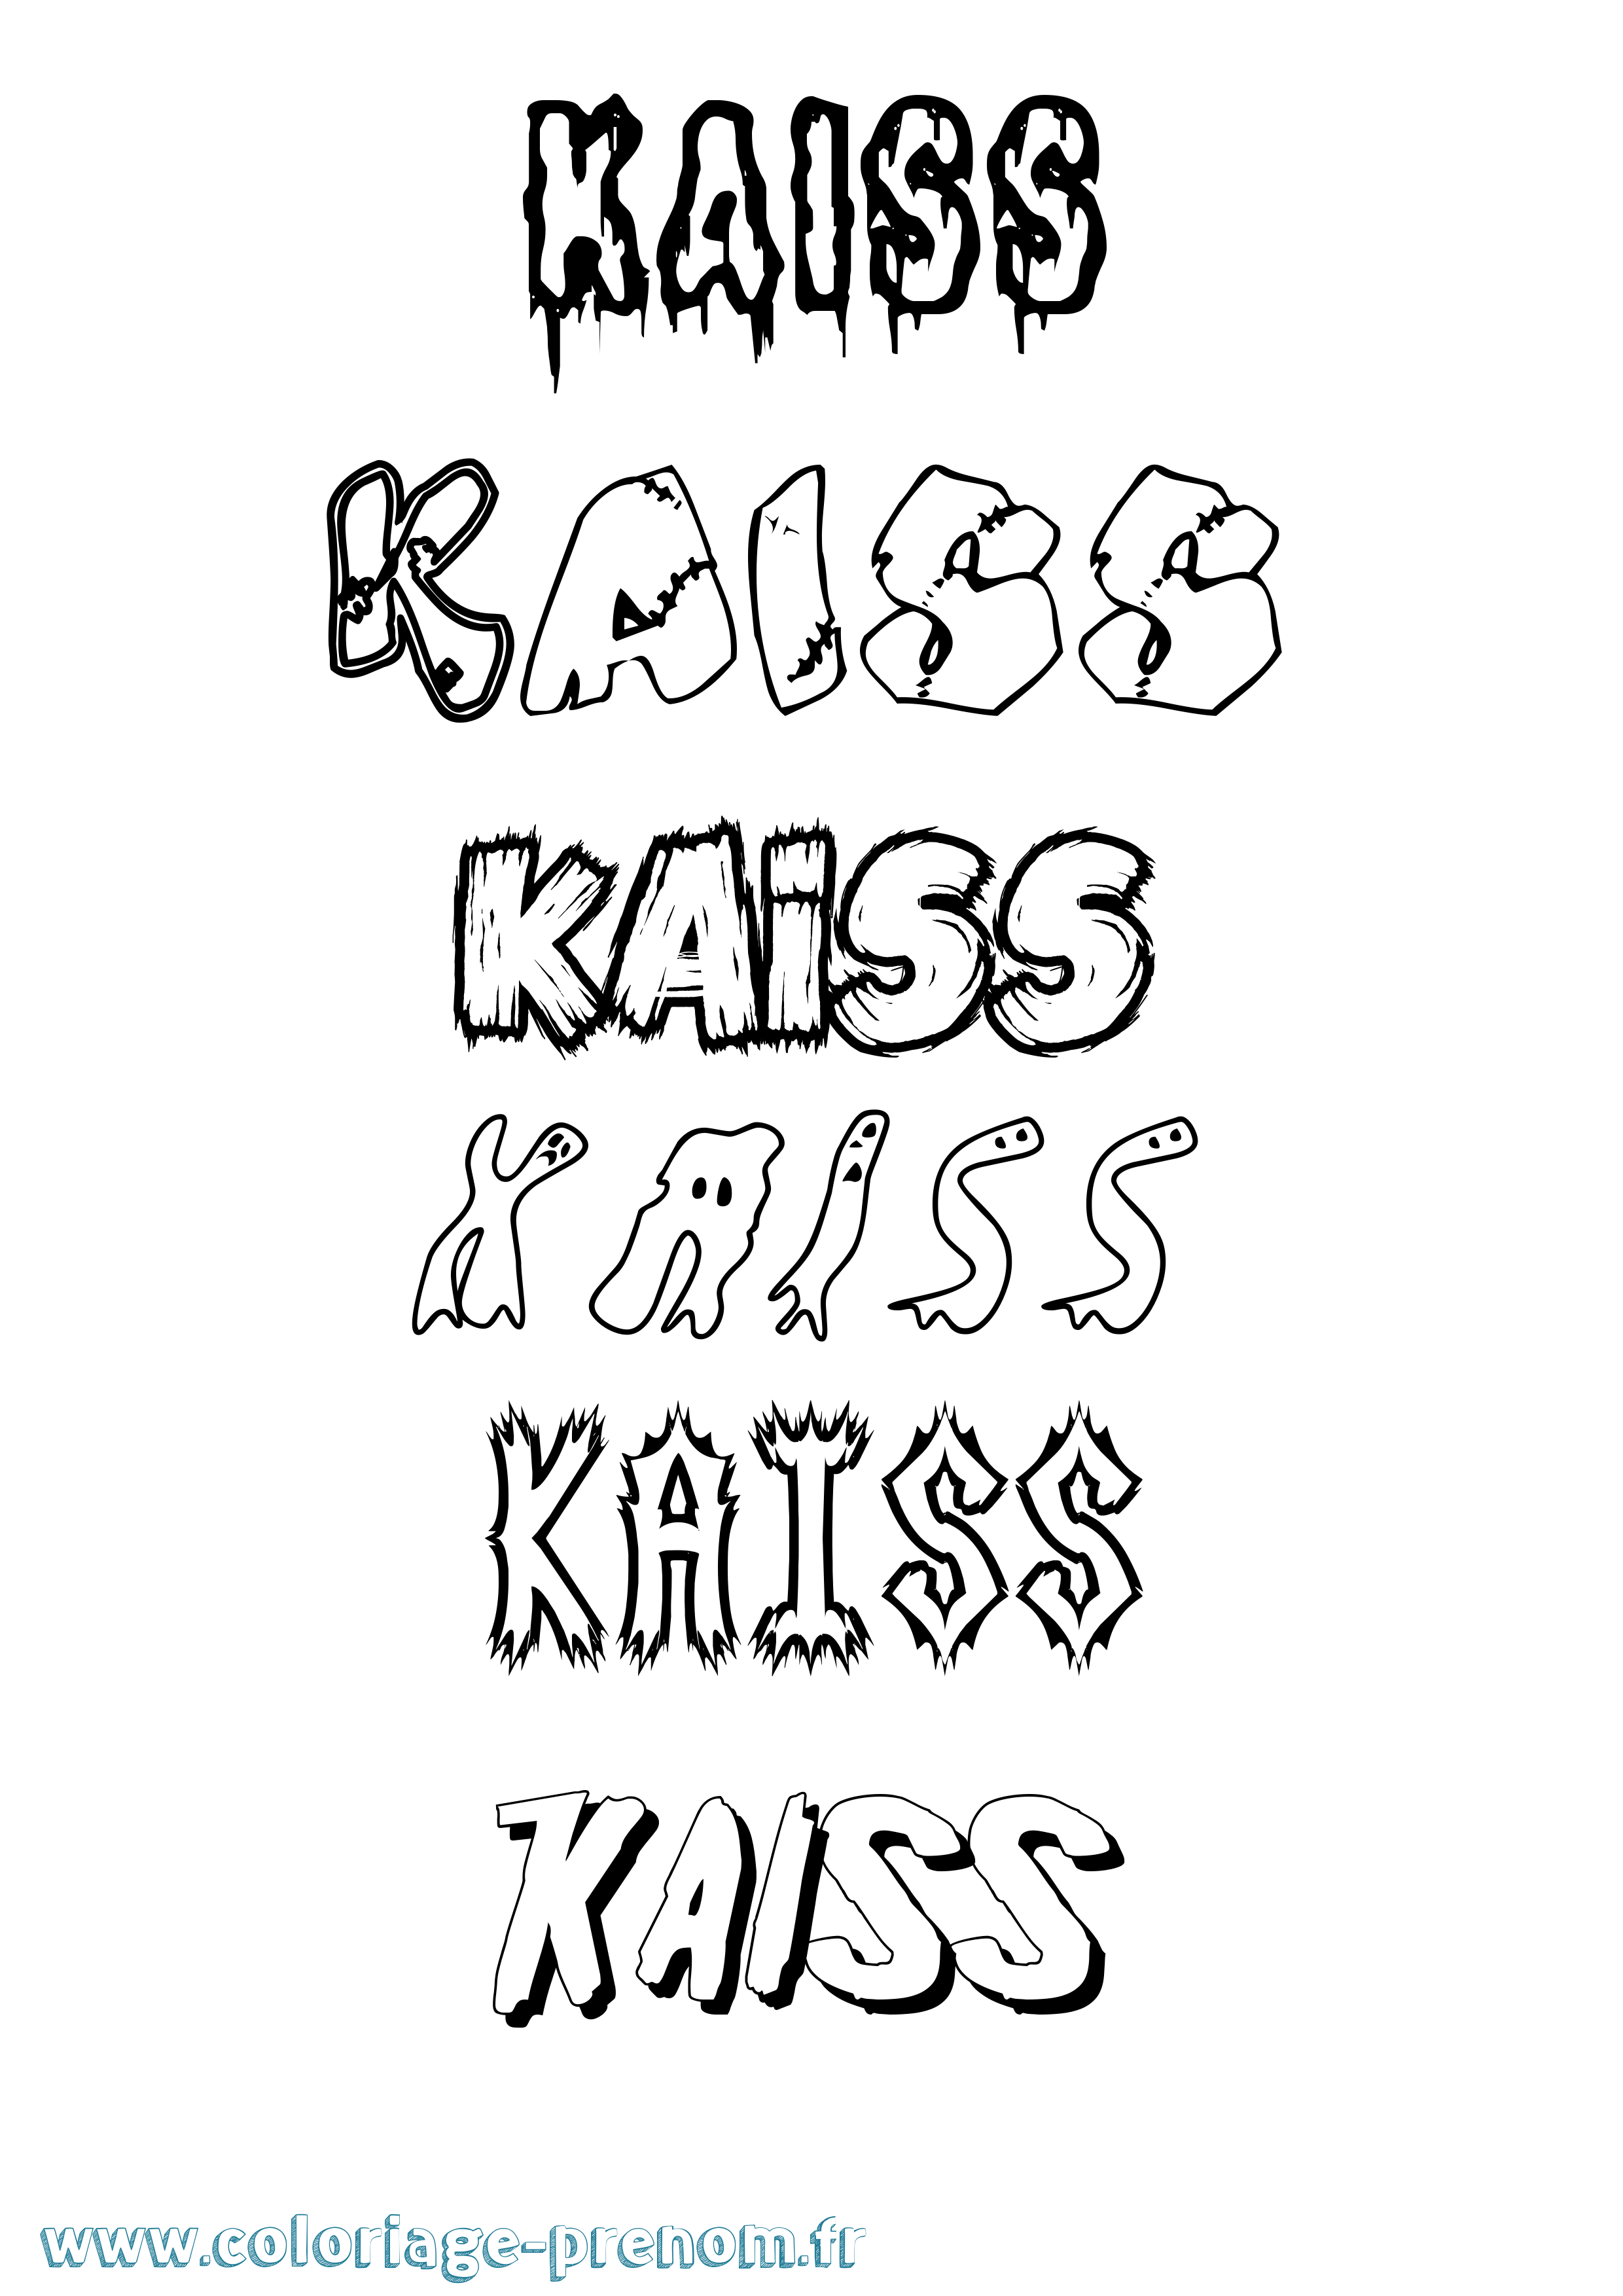 Coloriage prénom Kaiss Frisson